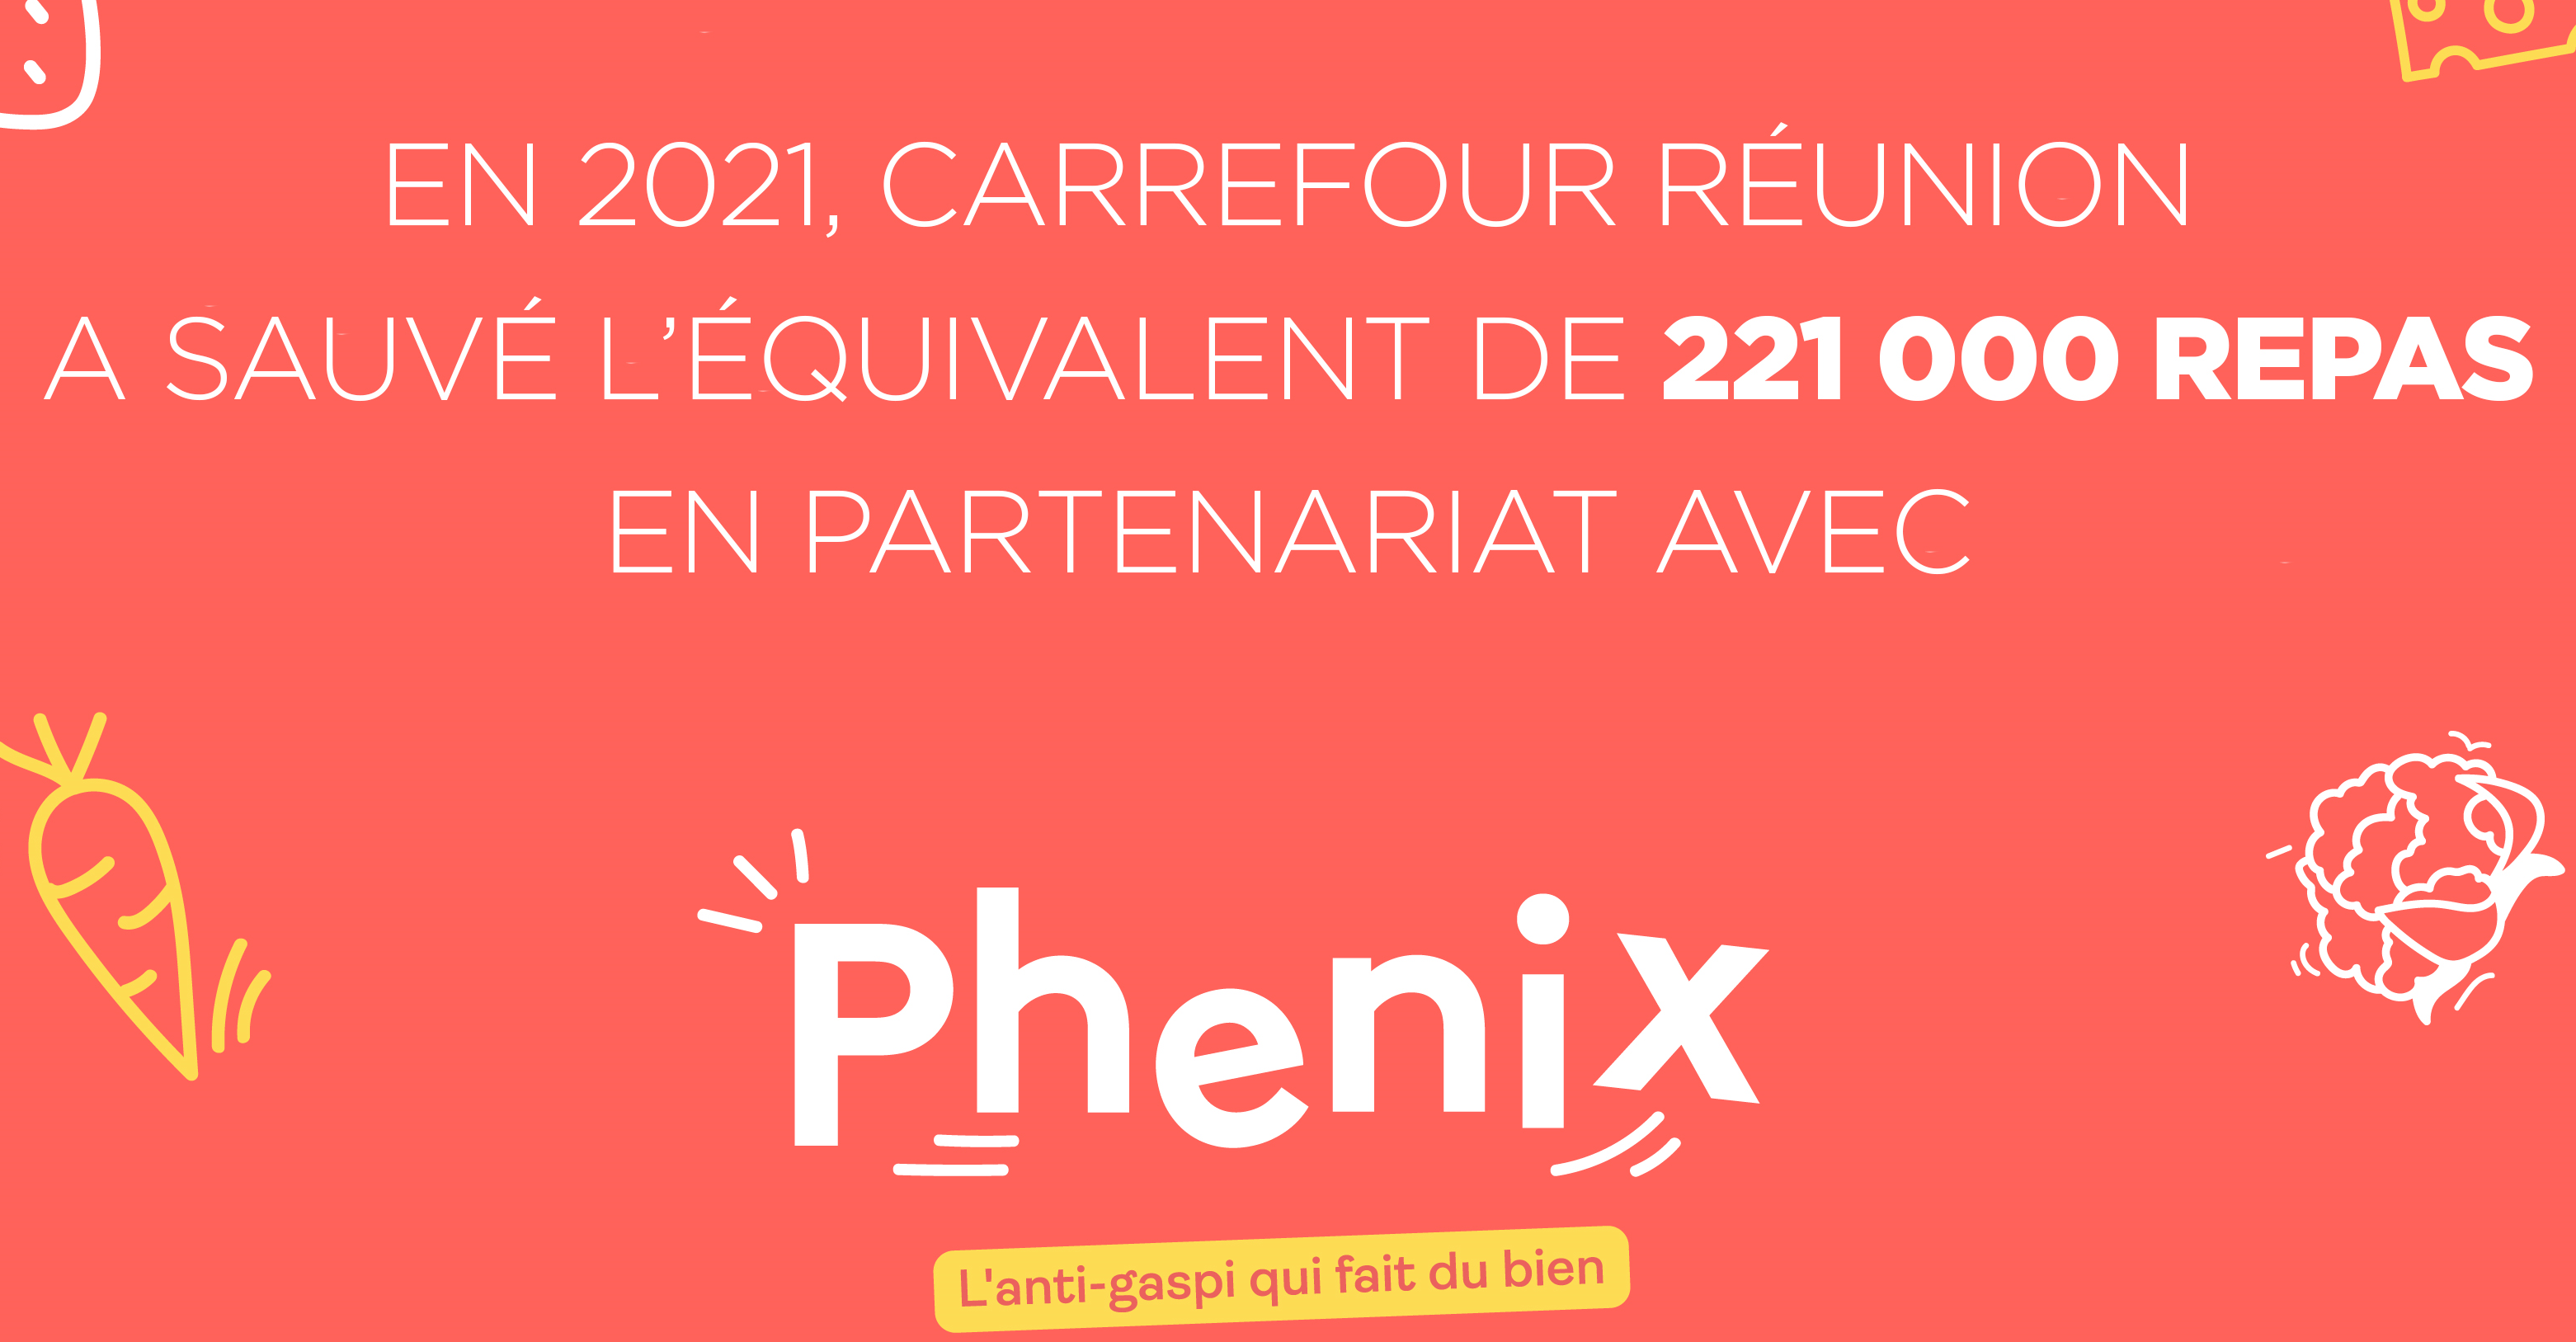 Carrefour Réunion et Phénix, partenaire de lutte contre l'anti-gaspillage ont sauvé 221 000 repas en 2021